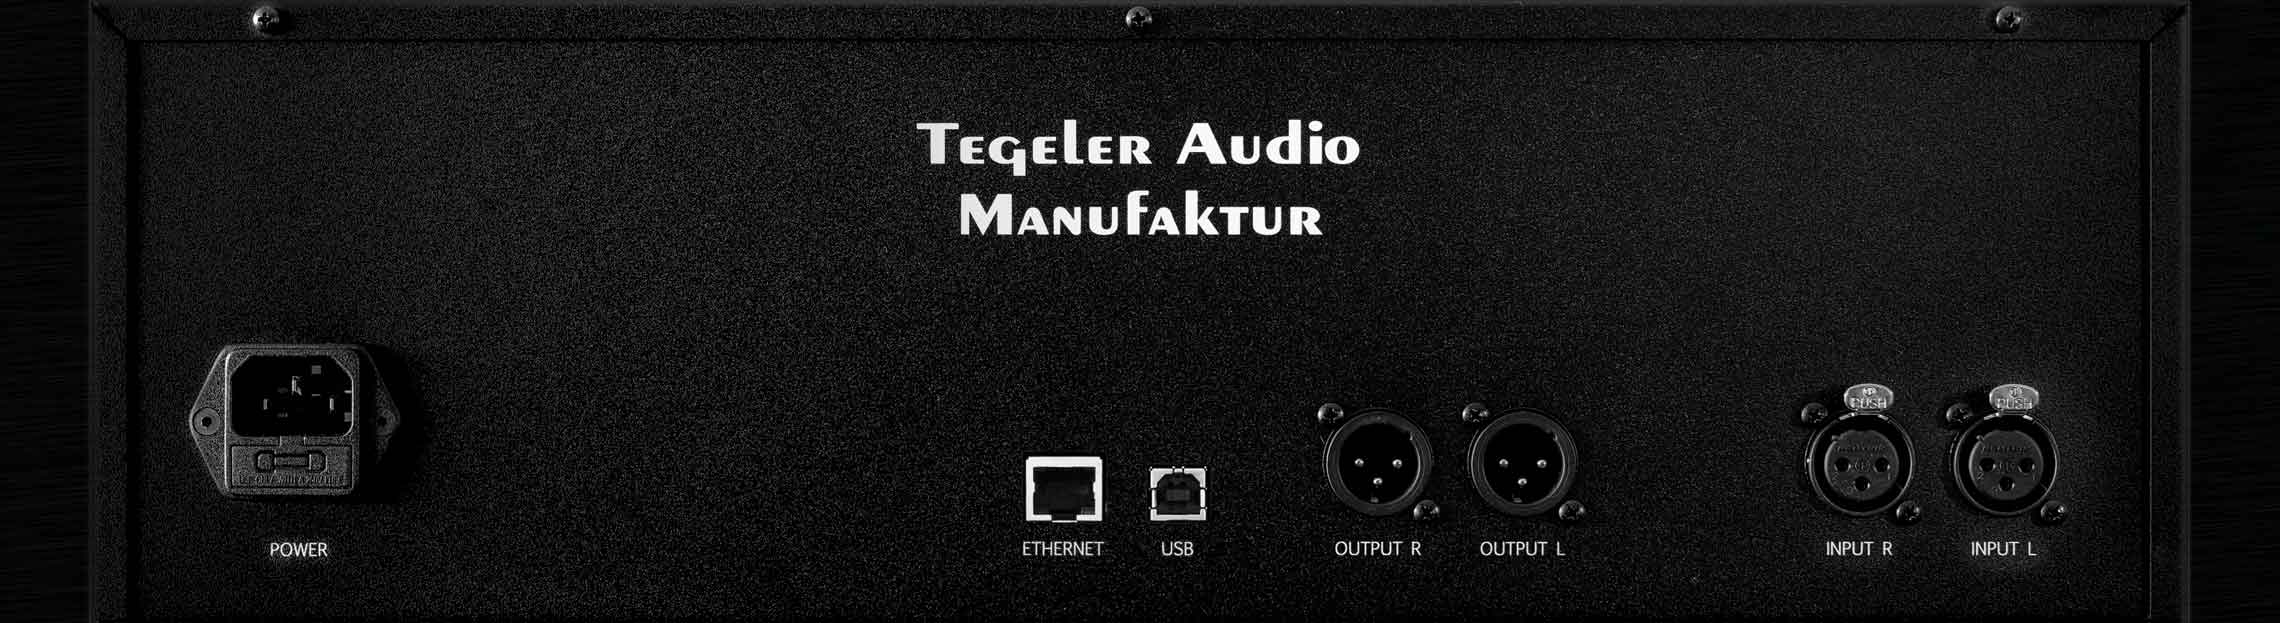 Tegeler Audio Manufaktur Schwerkraftmaschine - Effektprozessor - Variation 1